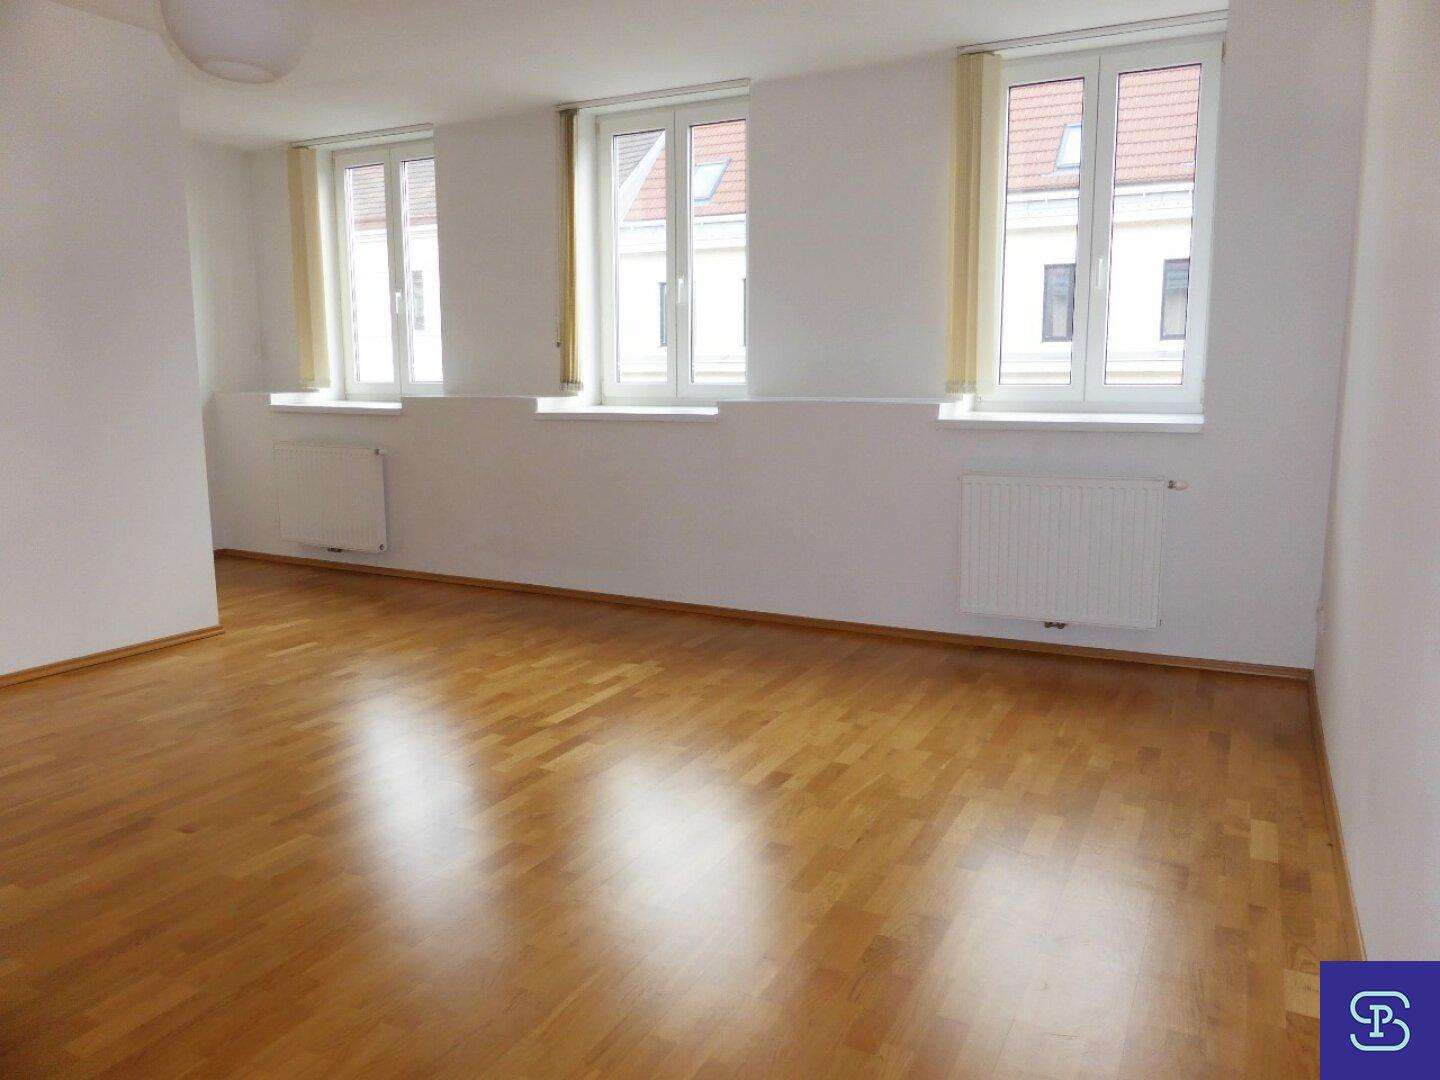 Provisionsfrei: Schöne 57m² DG-Wohnung mit Einbauküche und Lift - 1050 Wien